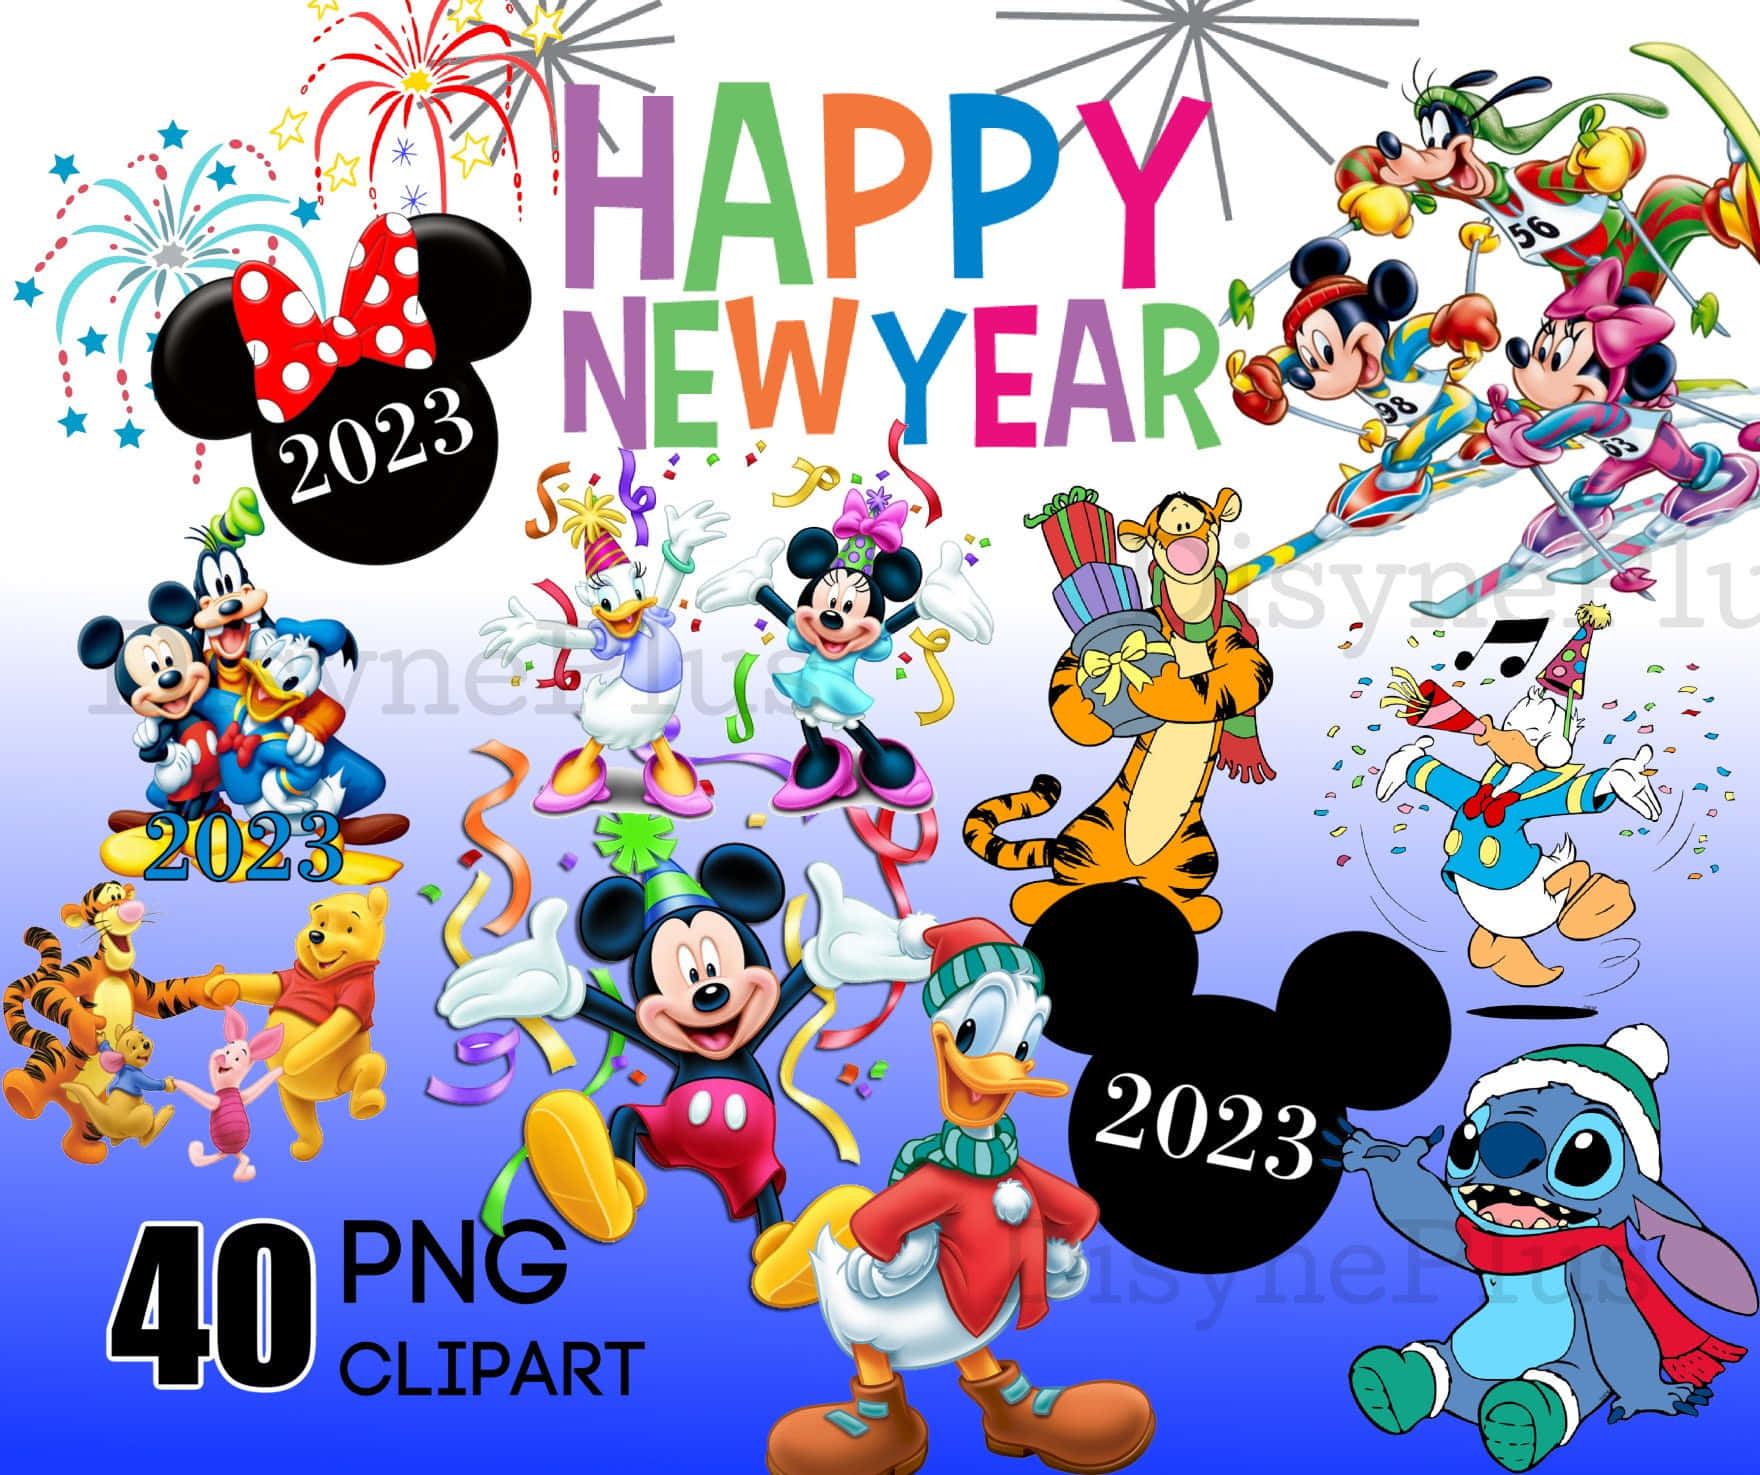 Feiernsie Das Neue Jahr Mit Micky Maus Wallpaper